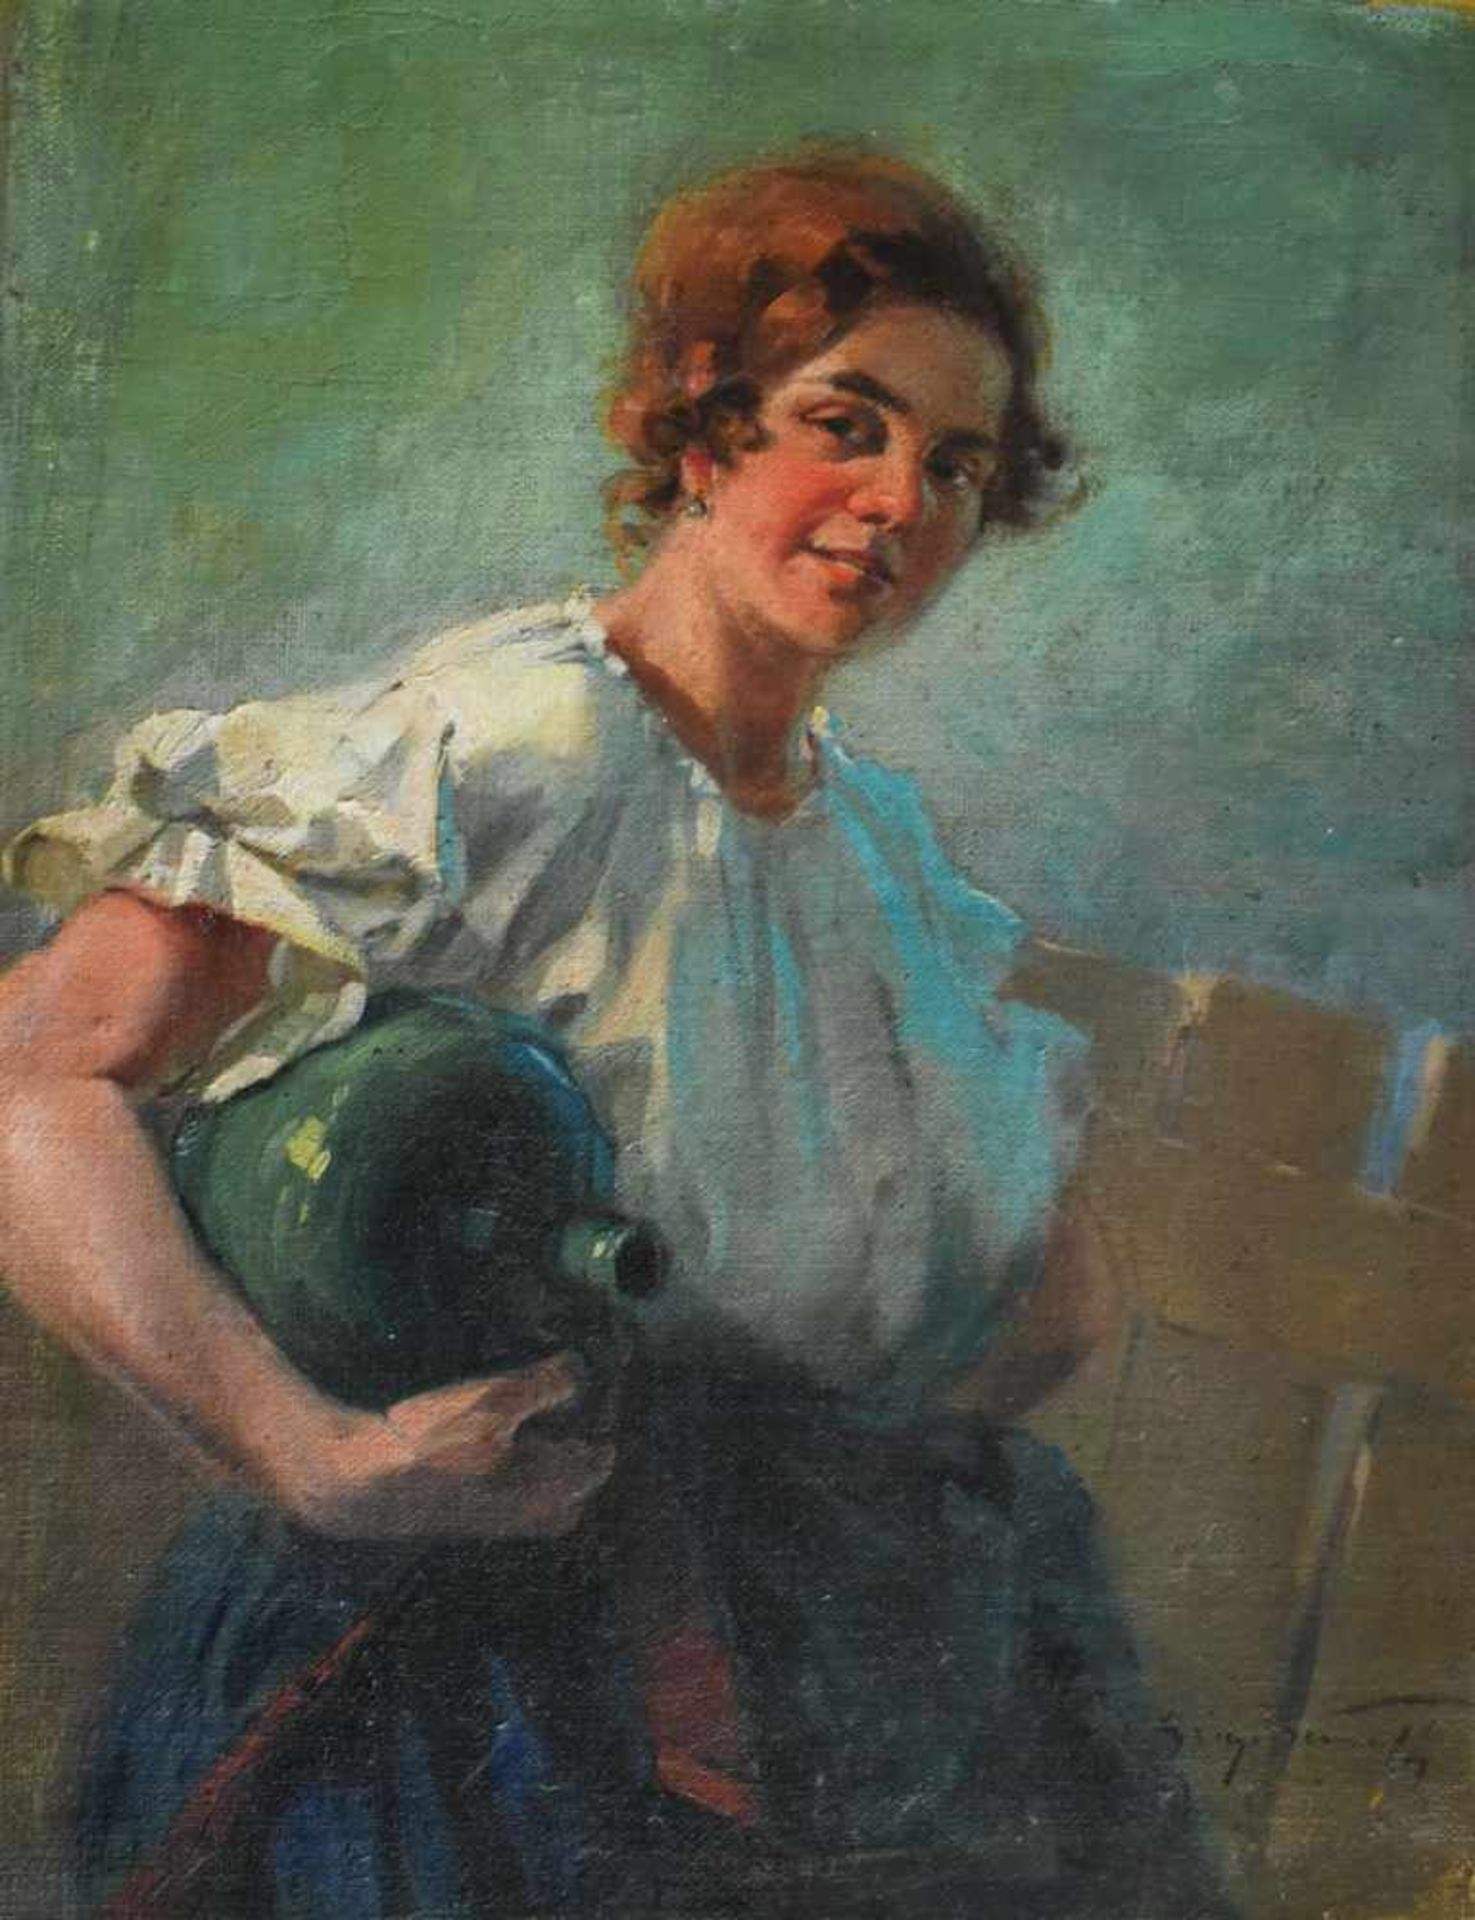 Nemeth, Gyorgy (1890 - 1962), "Bäuerin mit Wasserkrug"